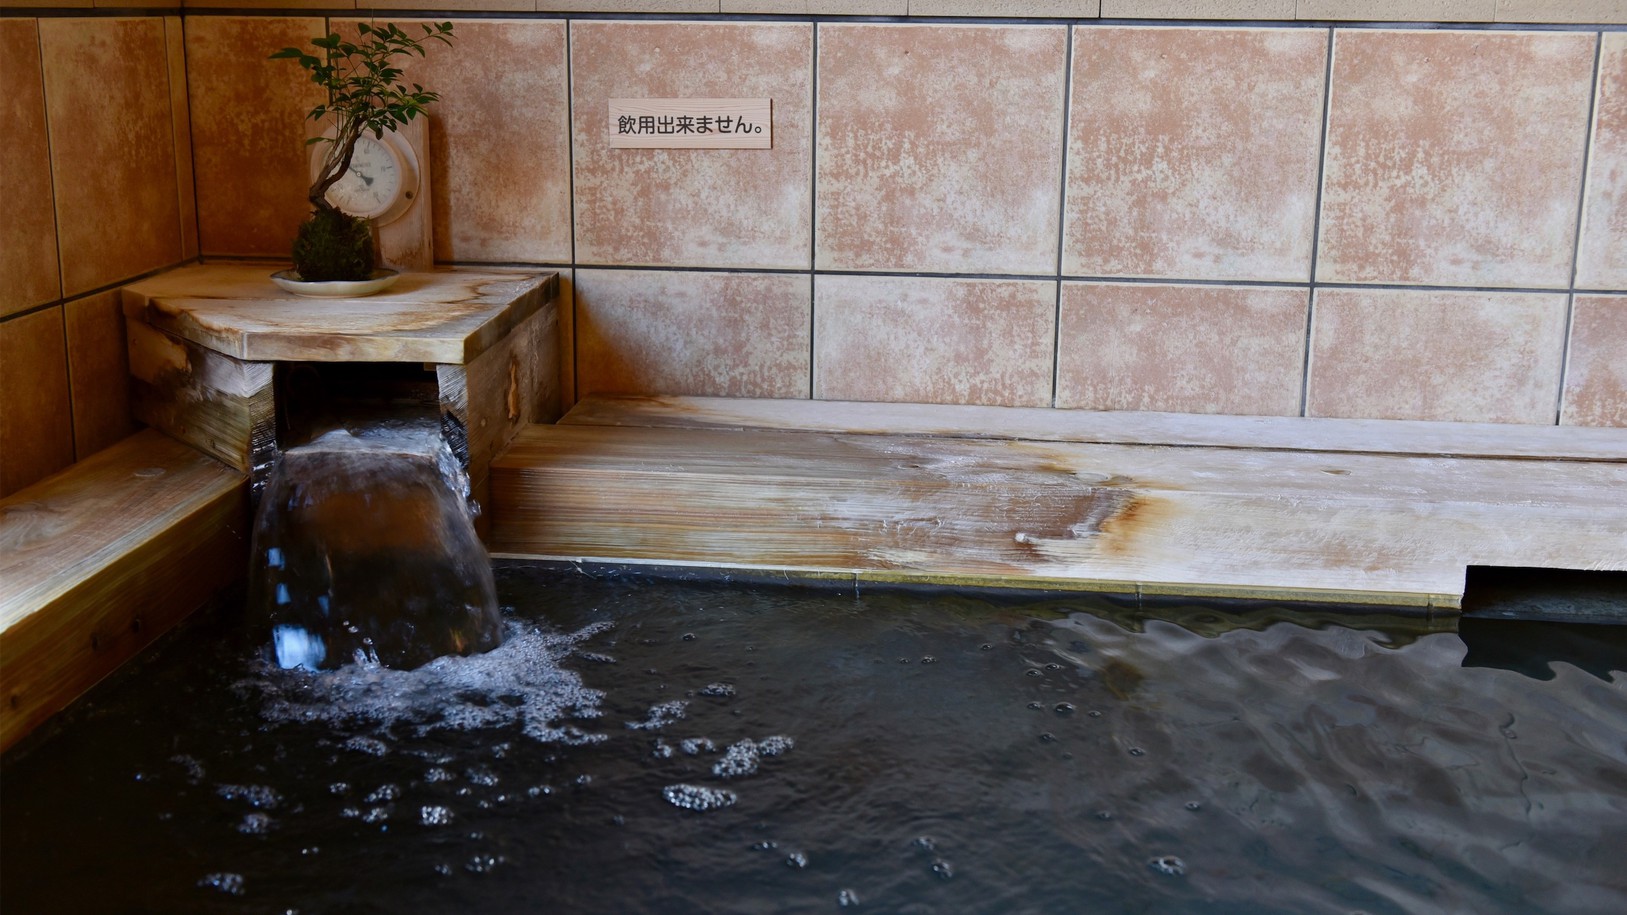 「化粧水の湯」とも称される温泉で贅沢な時間をお過ごしください